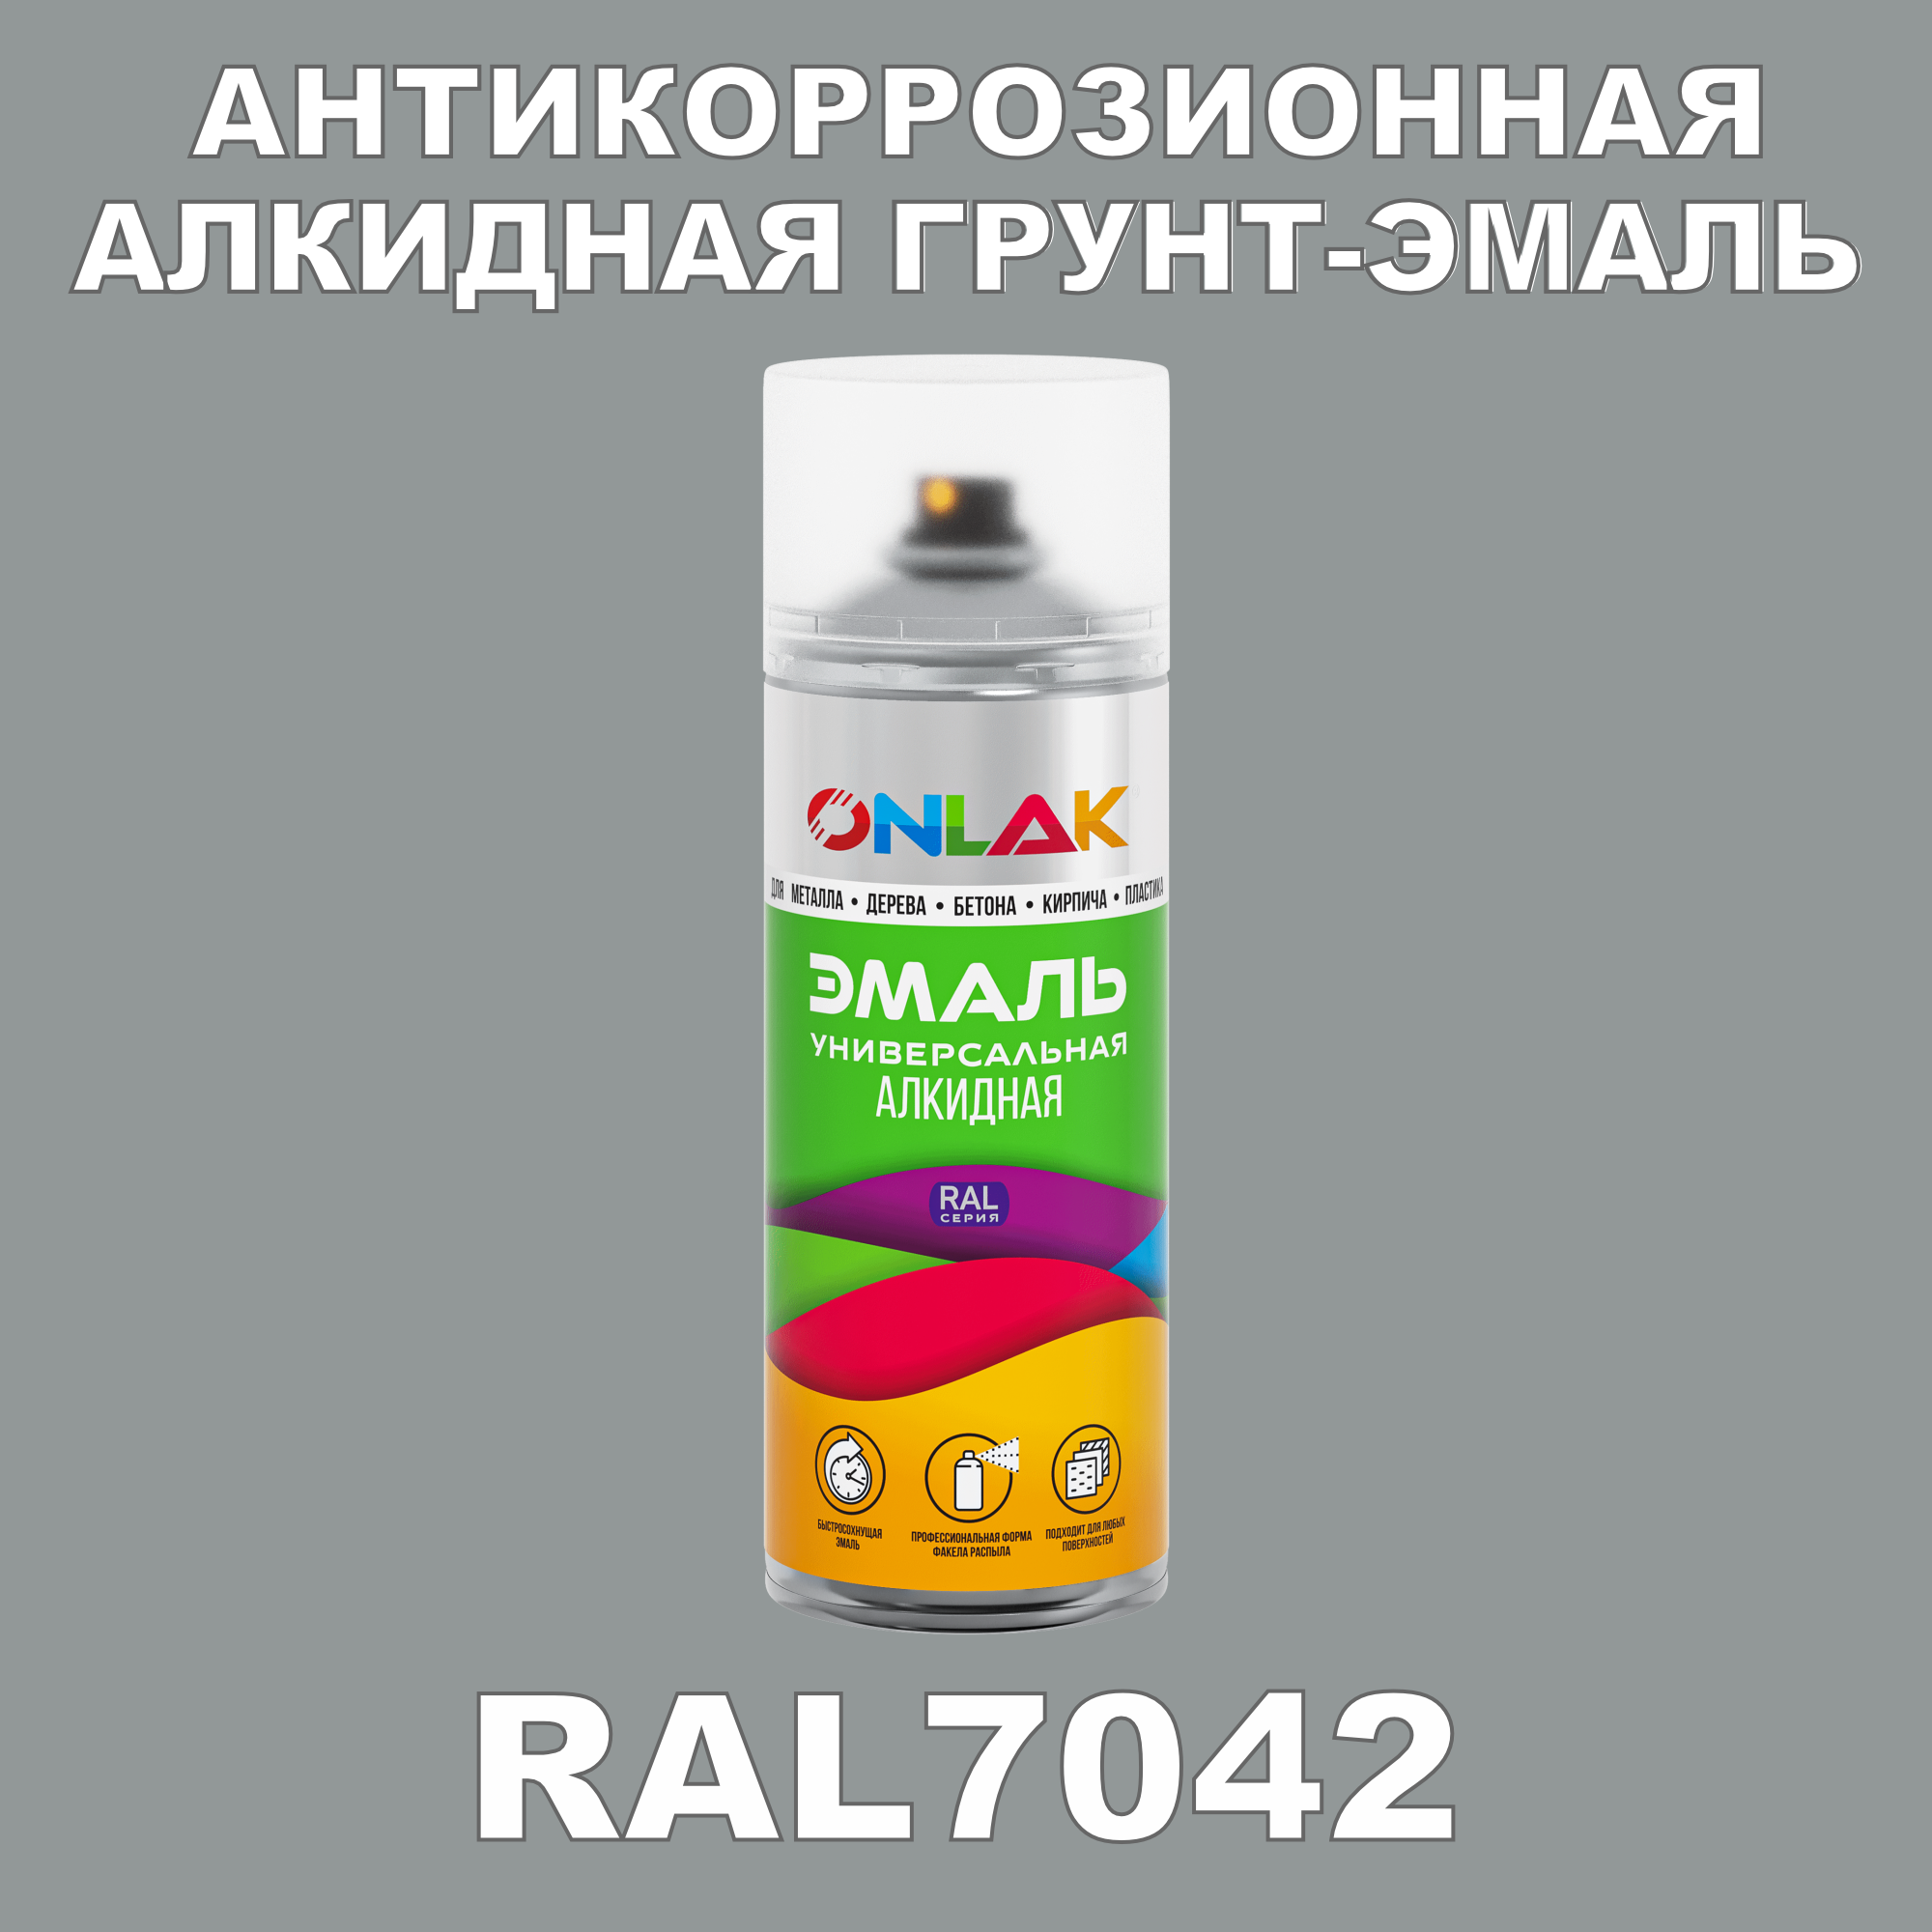 Антикоррозионная грунт-эмаль ONLAK RAL7042 полуматовая для металла и защиты от ржавчины